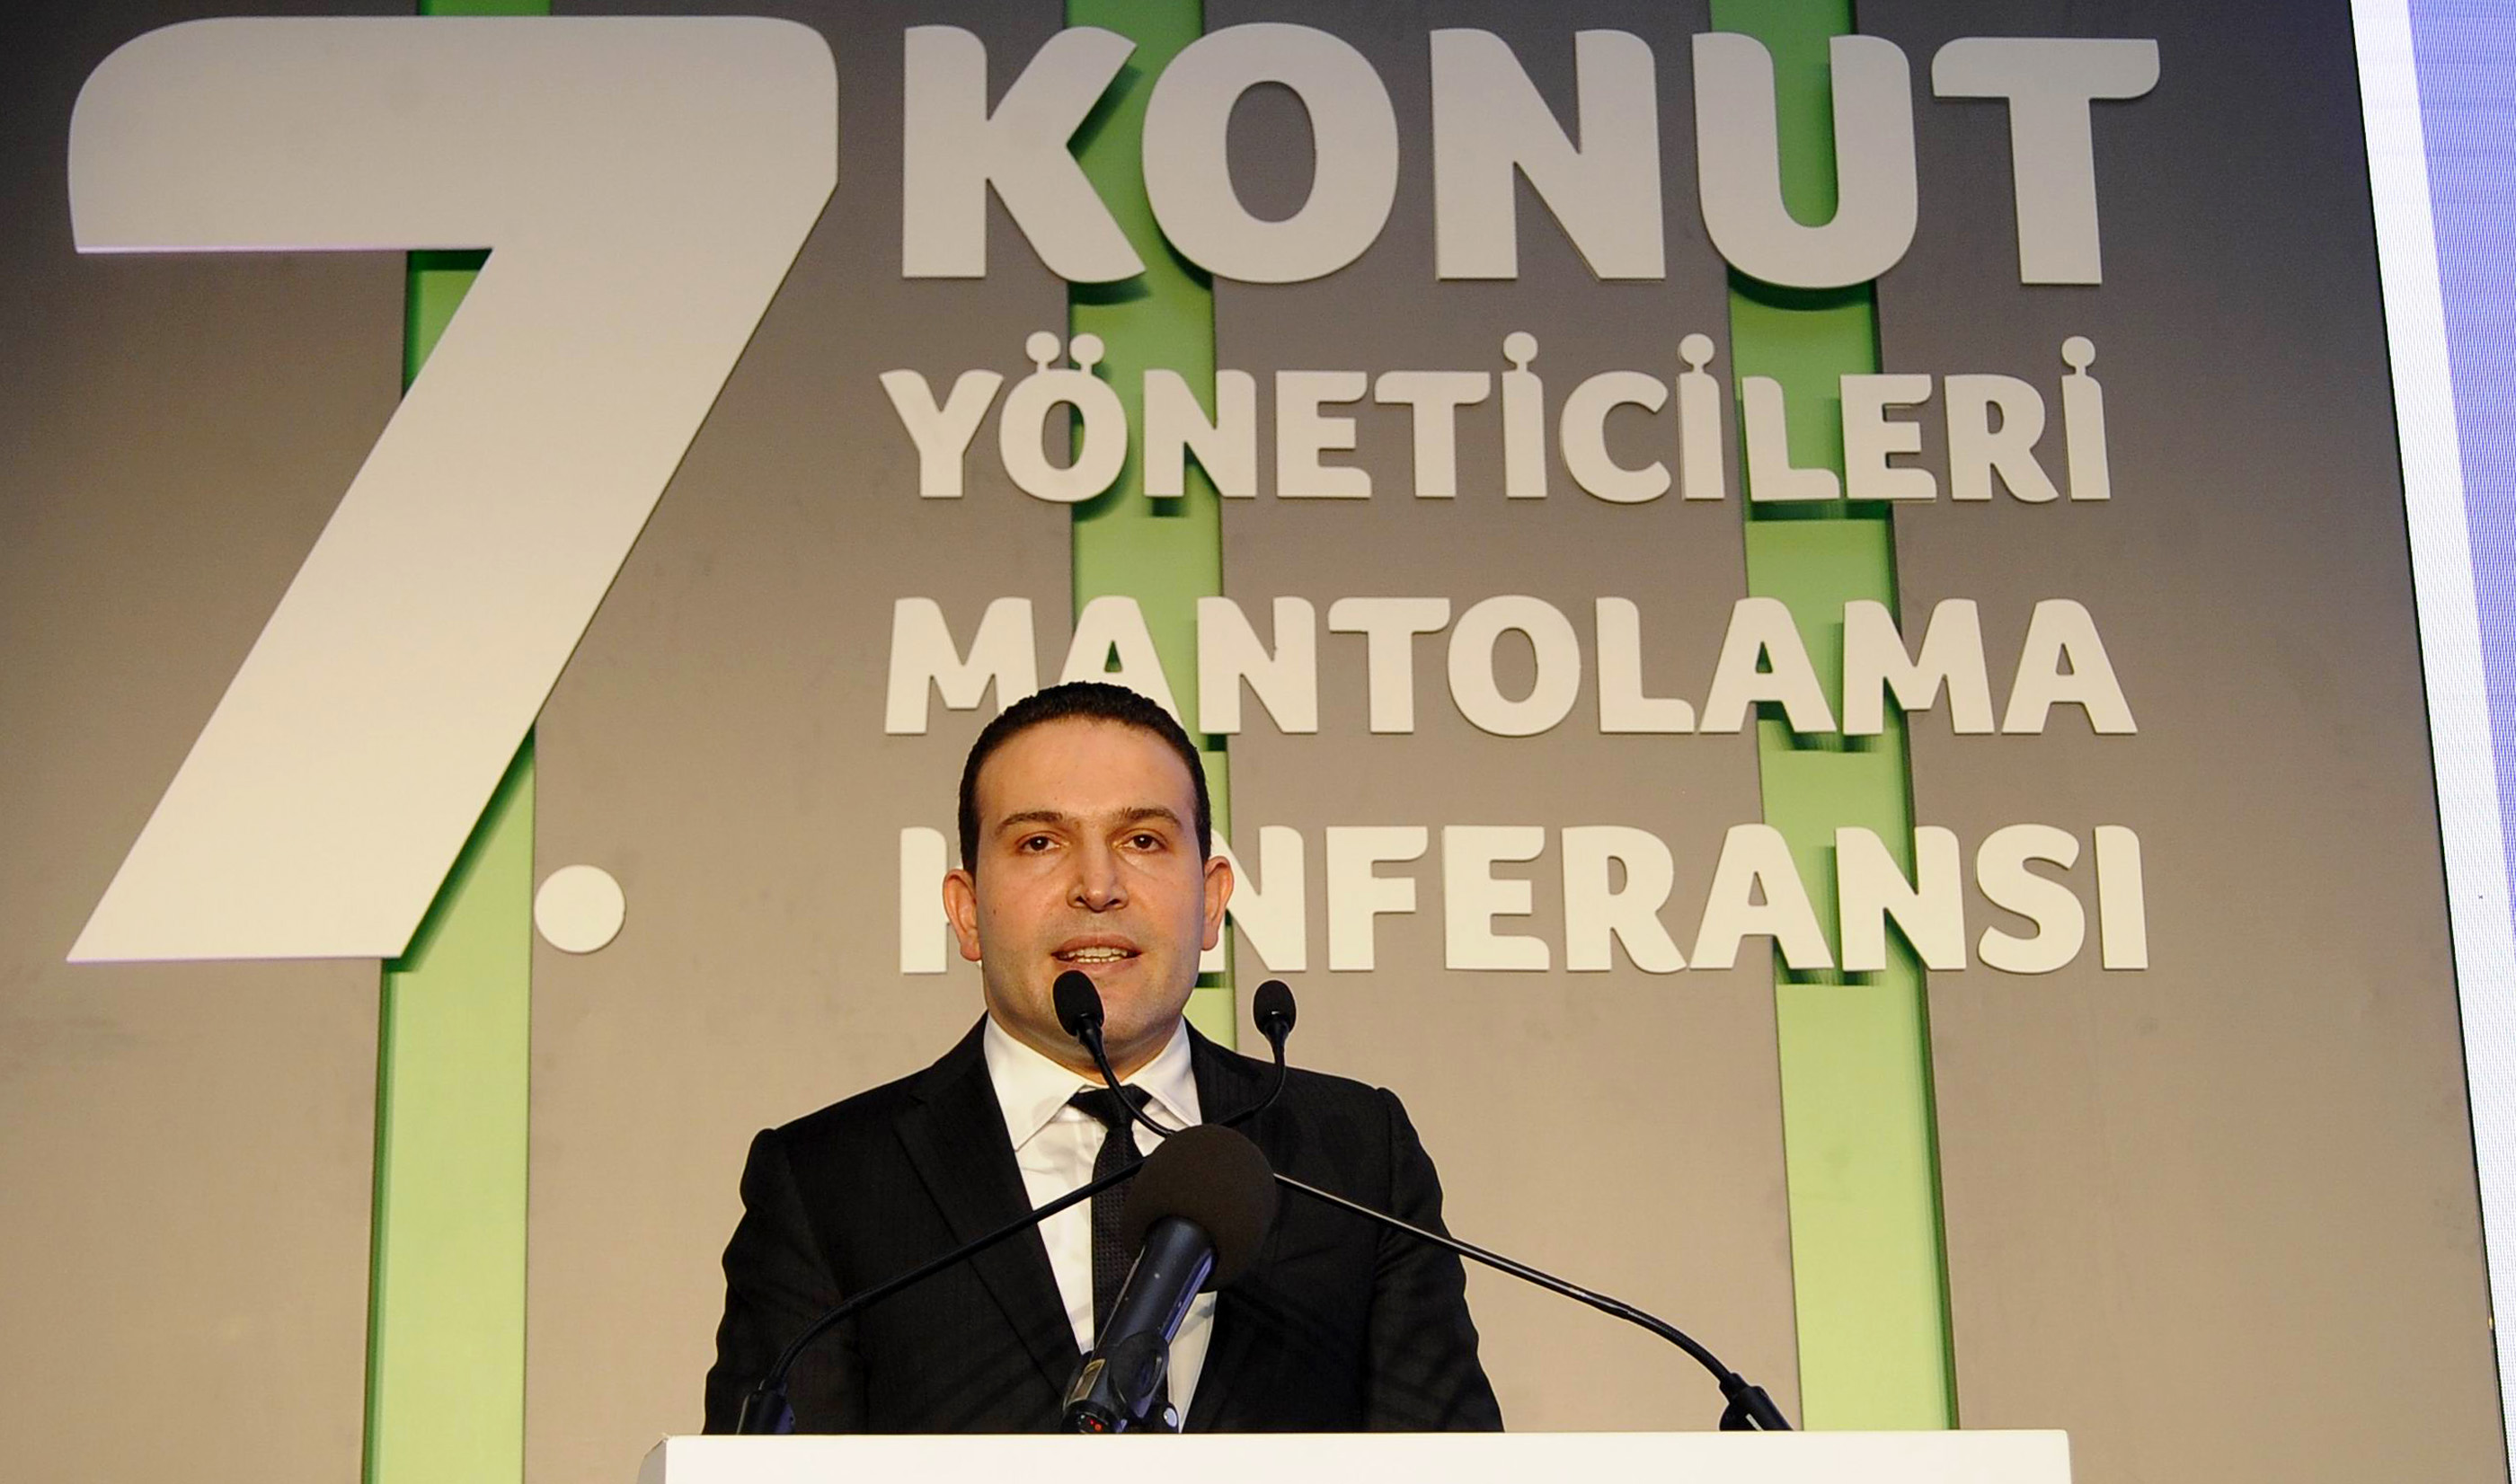 Yedinci Konut Yöneticileri Mantolama Konferansı İstanbul'da gerçekleşti-2824